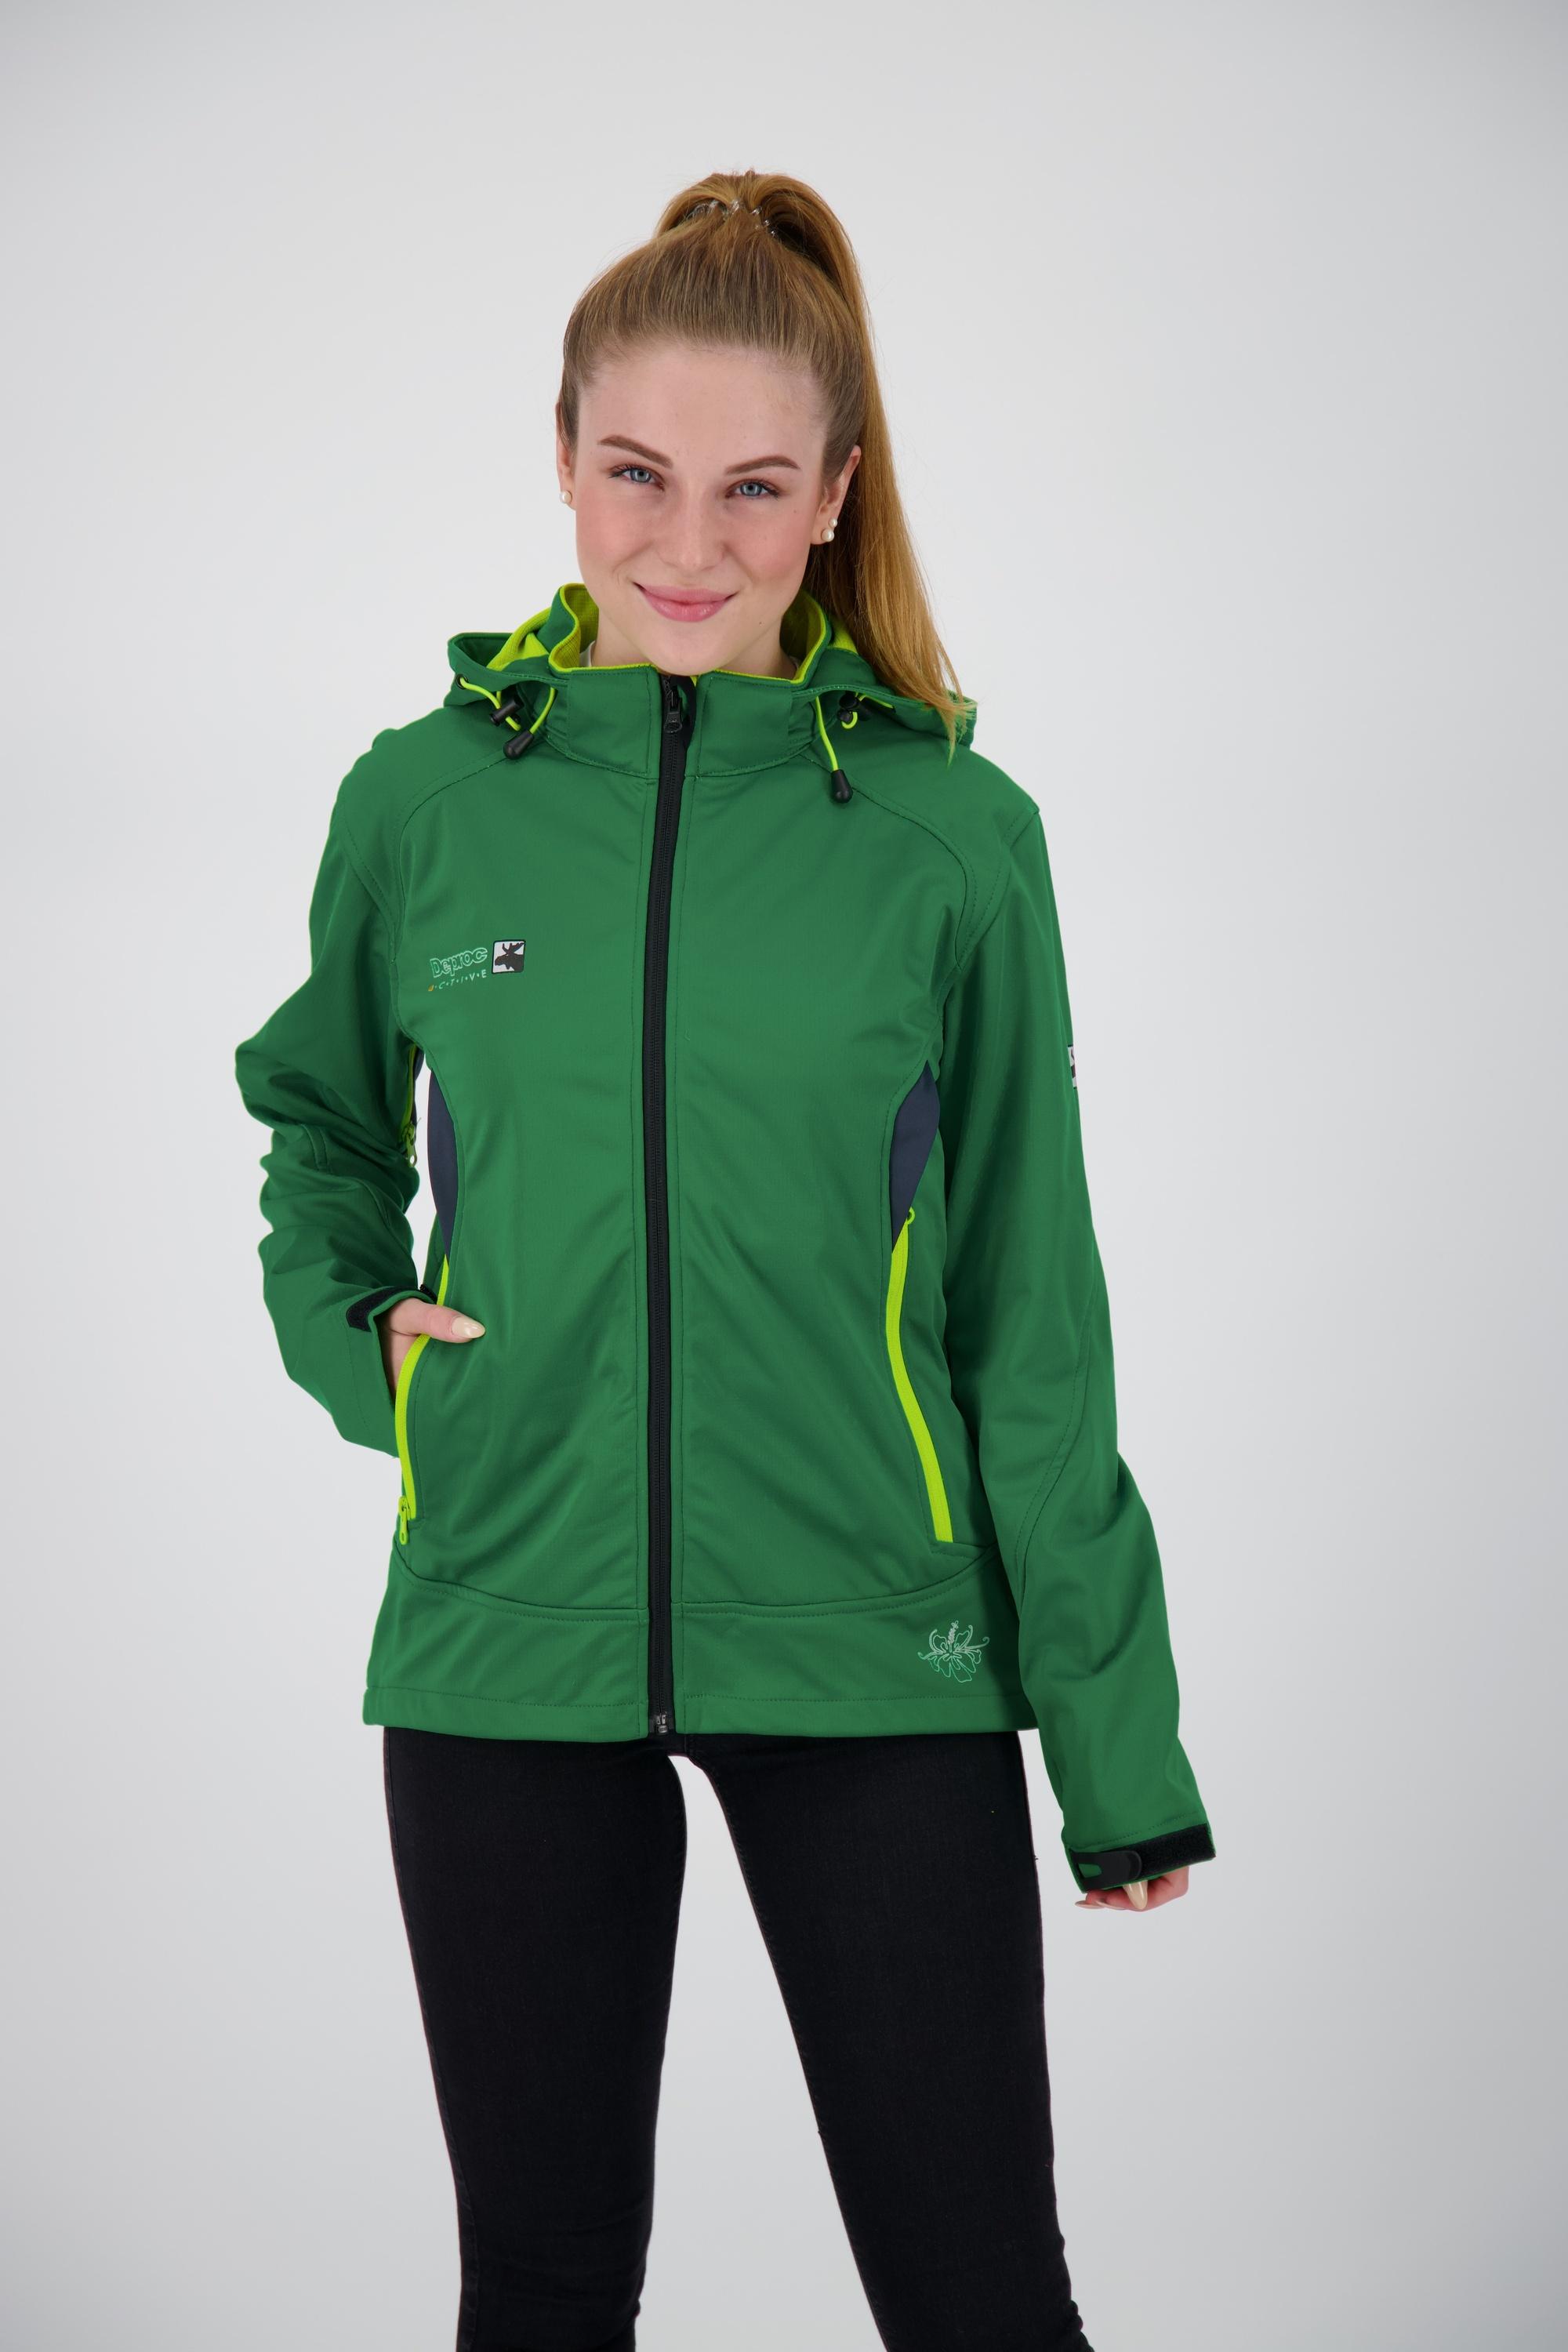 Damen SportScheck active WOMEN Online von im Shop kaufen DEPROC grün Downton Peak Softshelljacke